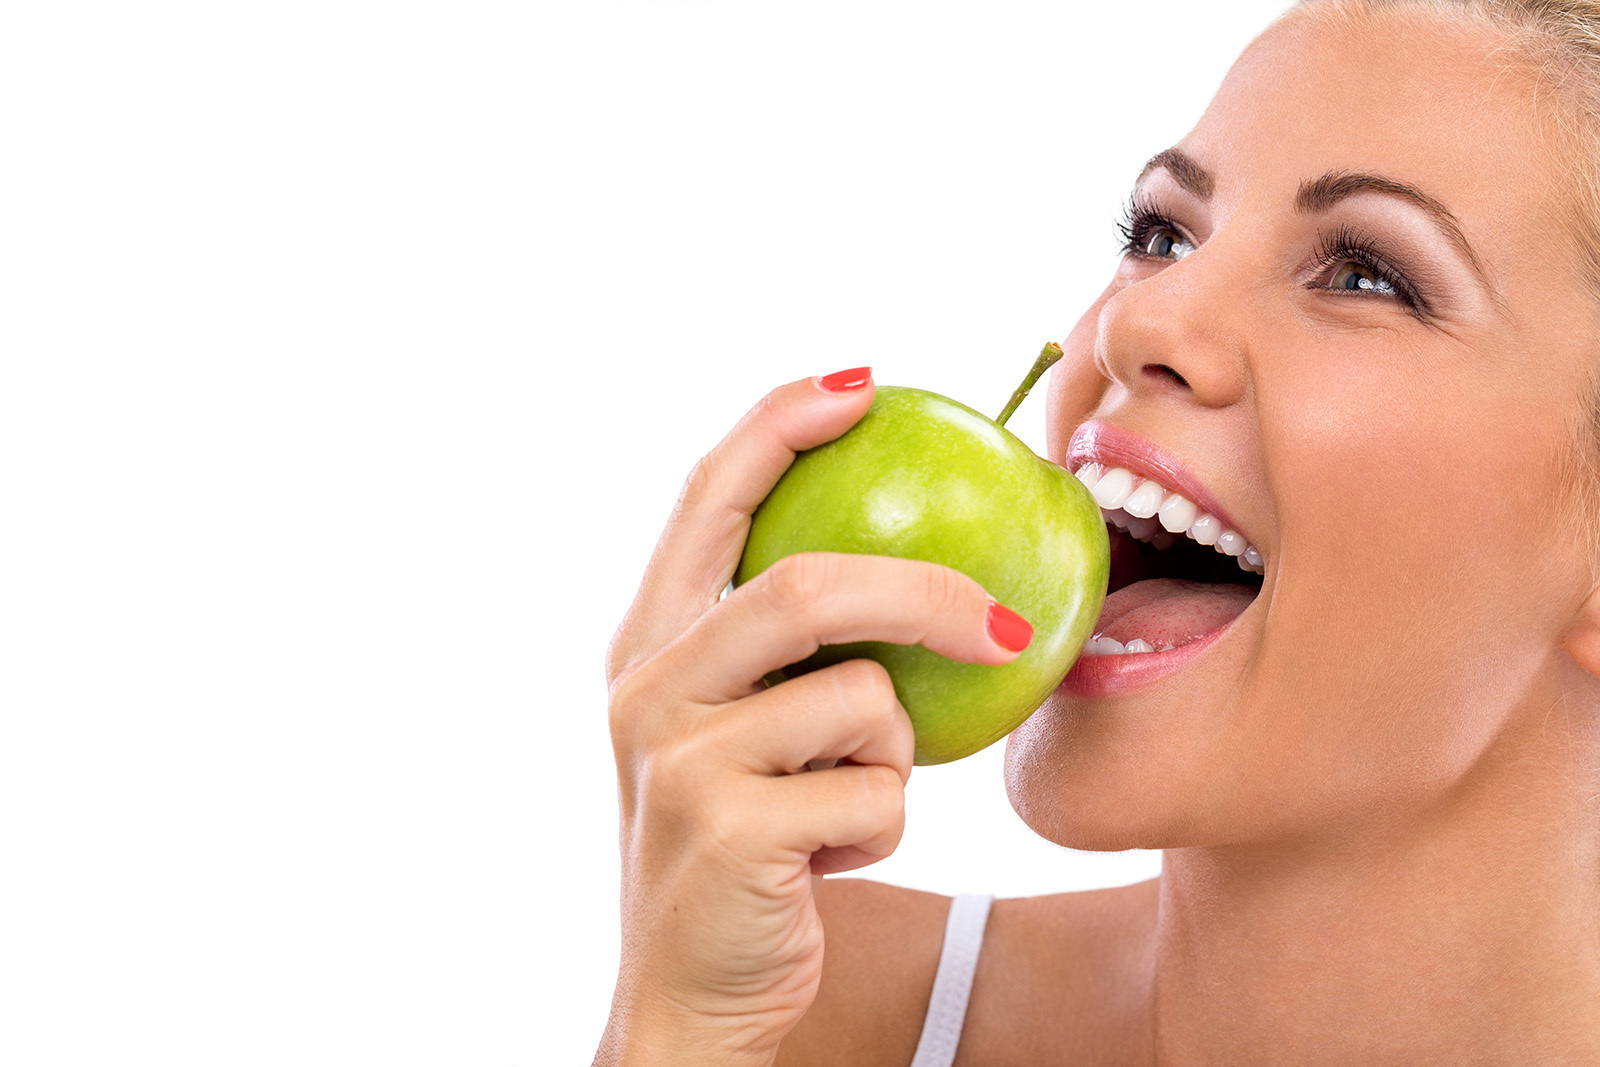 CITEȘTE: Cura de slăbire cu mere. 10 kg în 7 zile